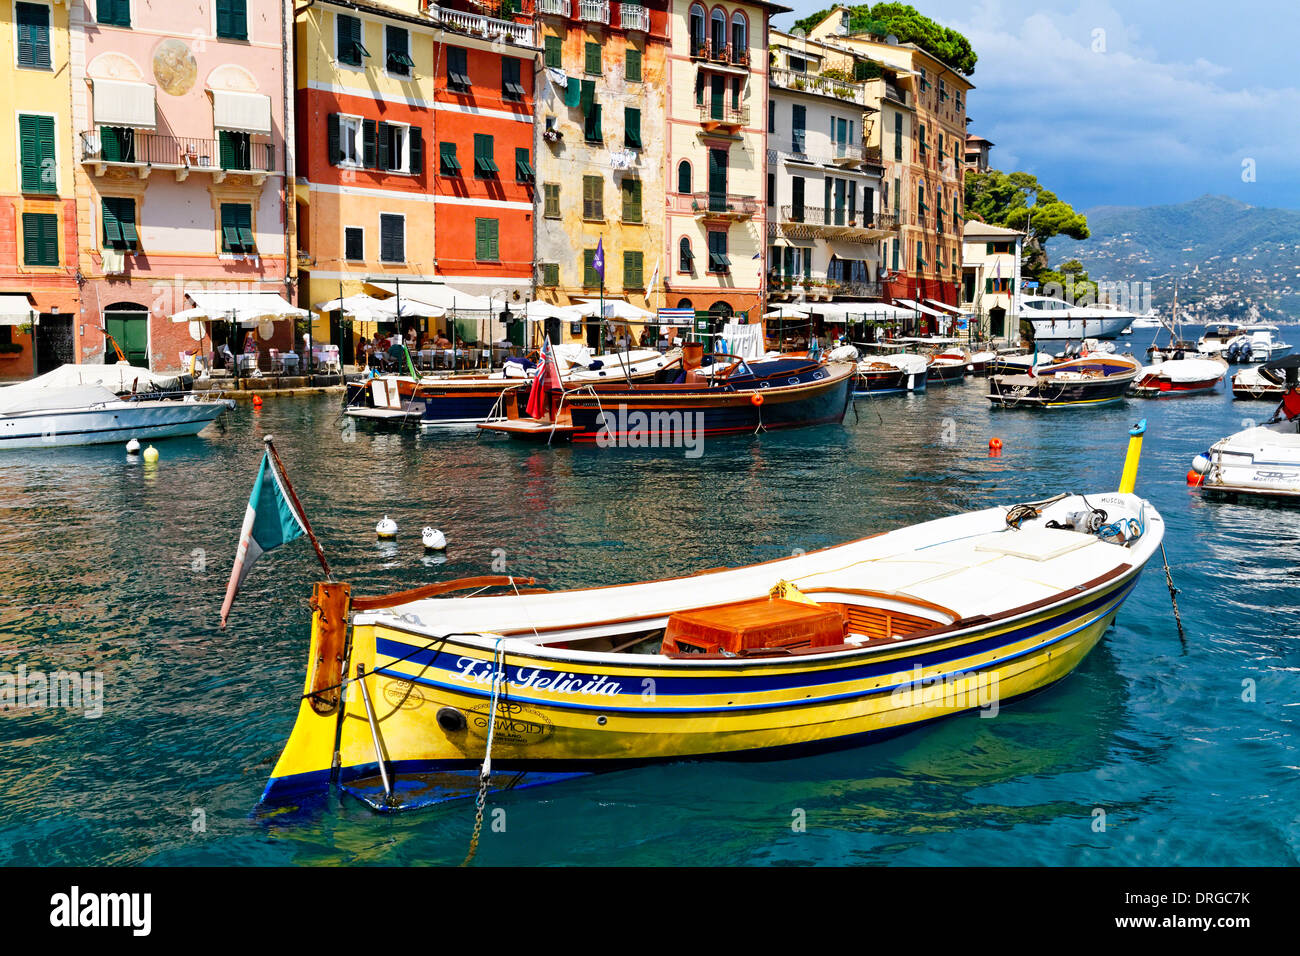 Bateaux traditionnels colorés dans un port, Portofino, ligurie, italie Banque D'Images